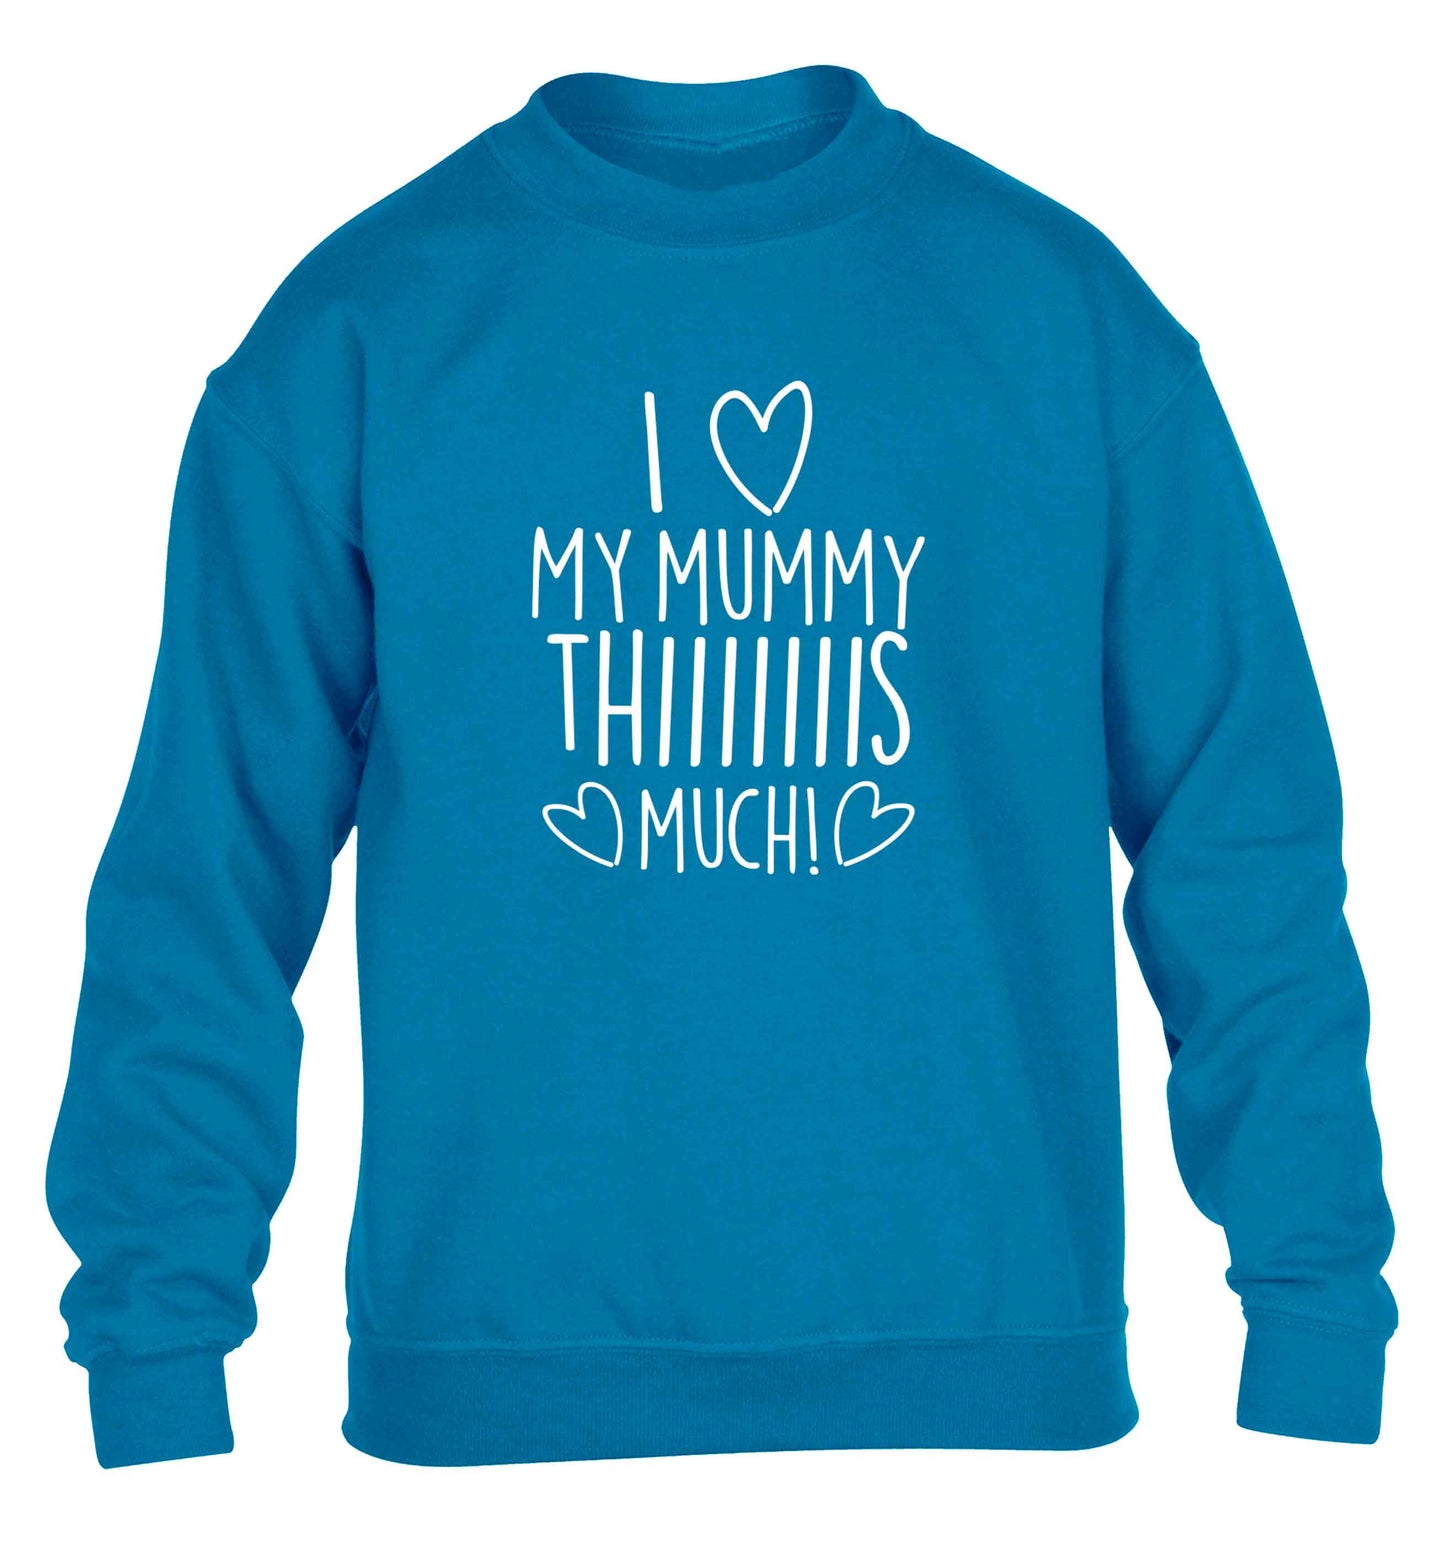 I love my mummy thiiiiis much! children's blue sweater 12-13 Years